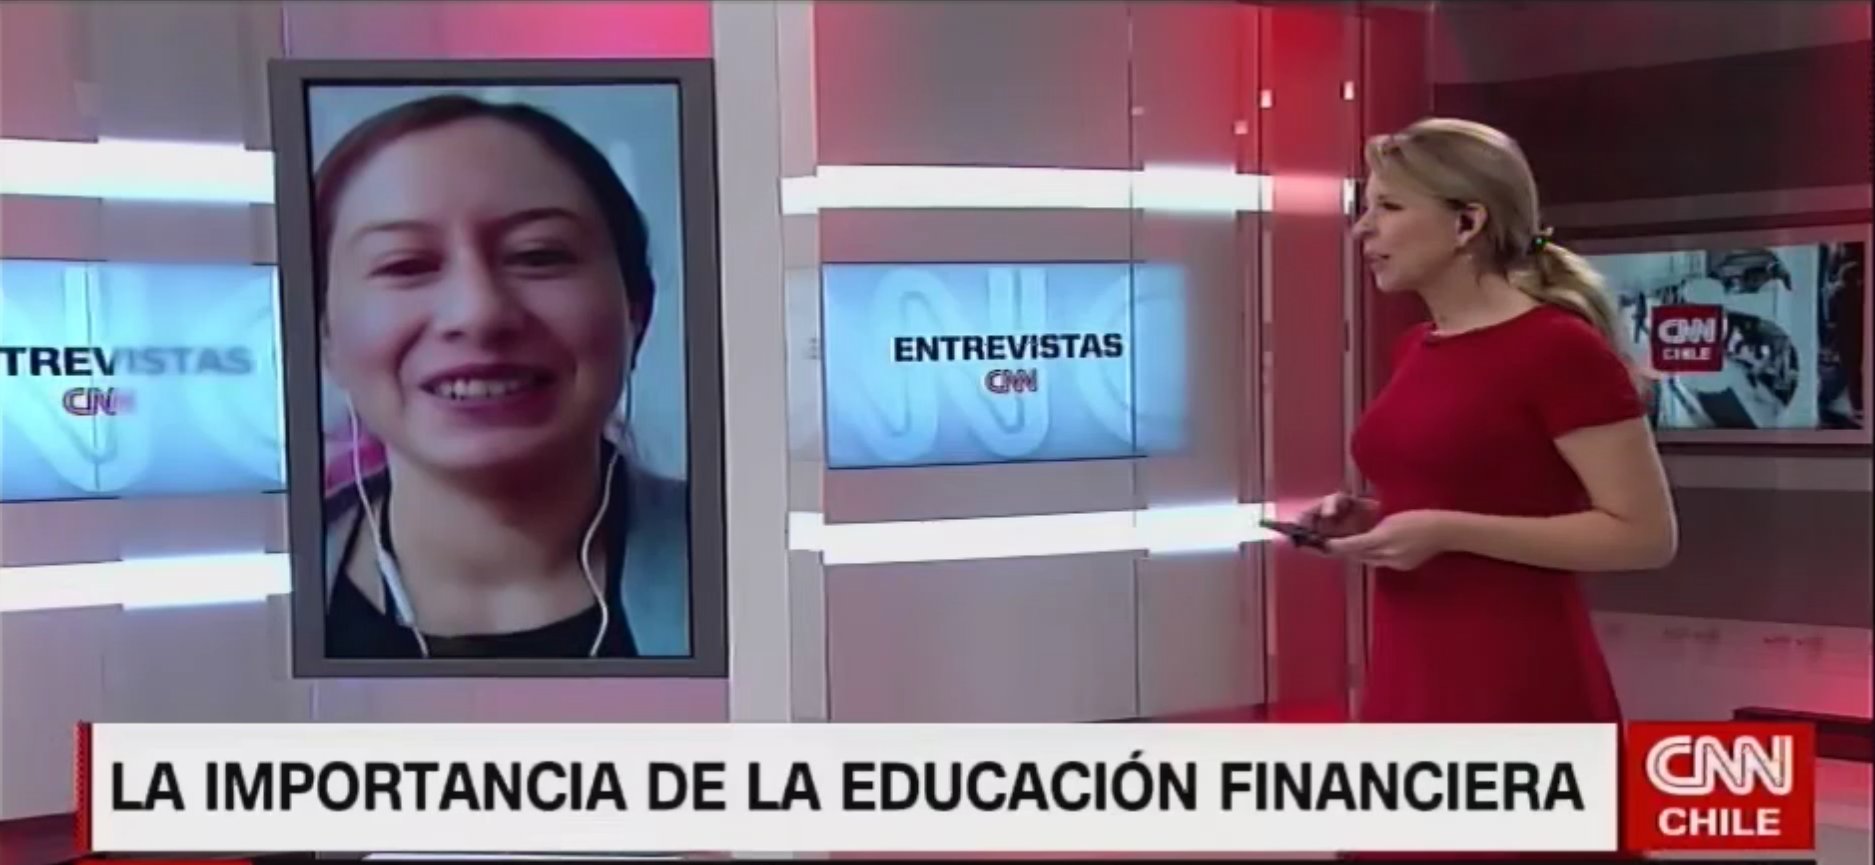 Andrea Canales sobre la educación financiera: “Hay poco material para alumnos de enseñanza media”